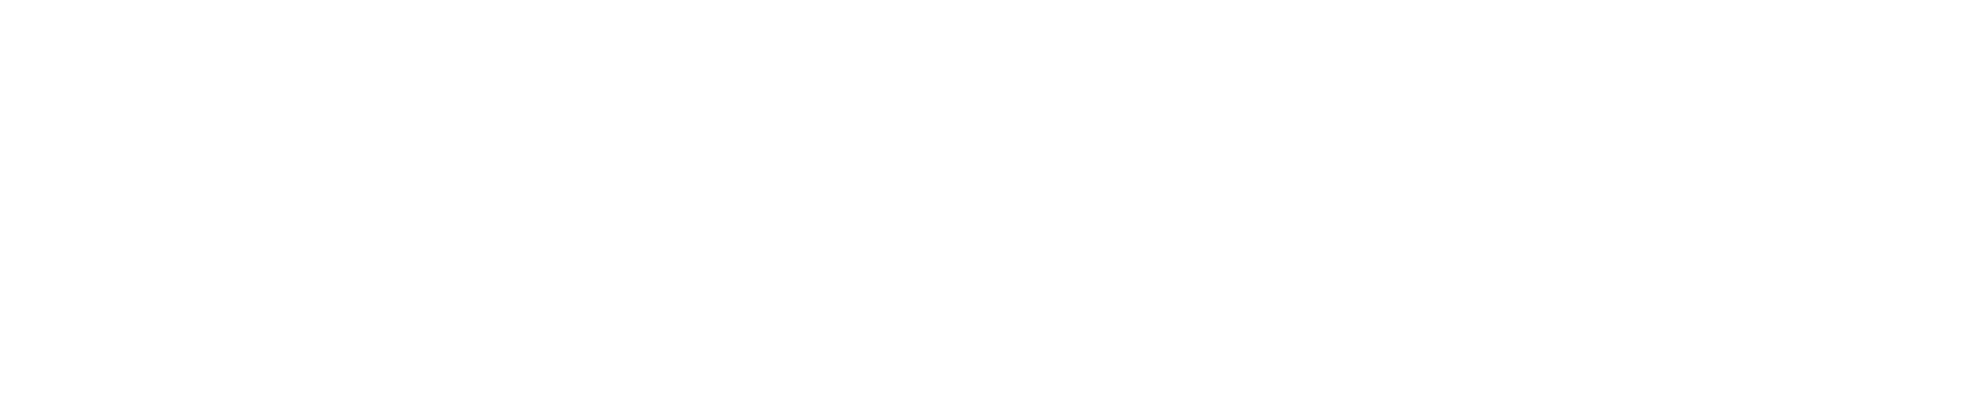 2022年度AO入学エントリー 資格取得 特別サイト